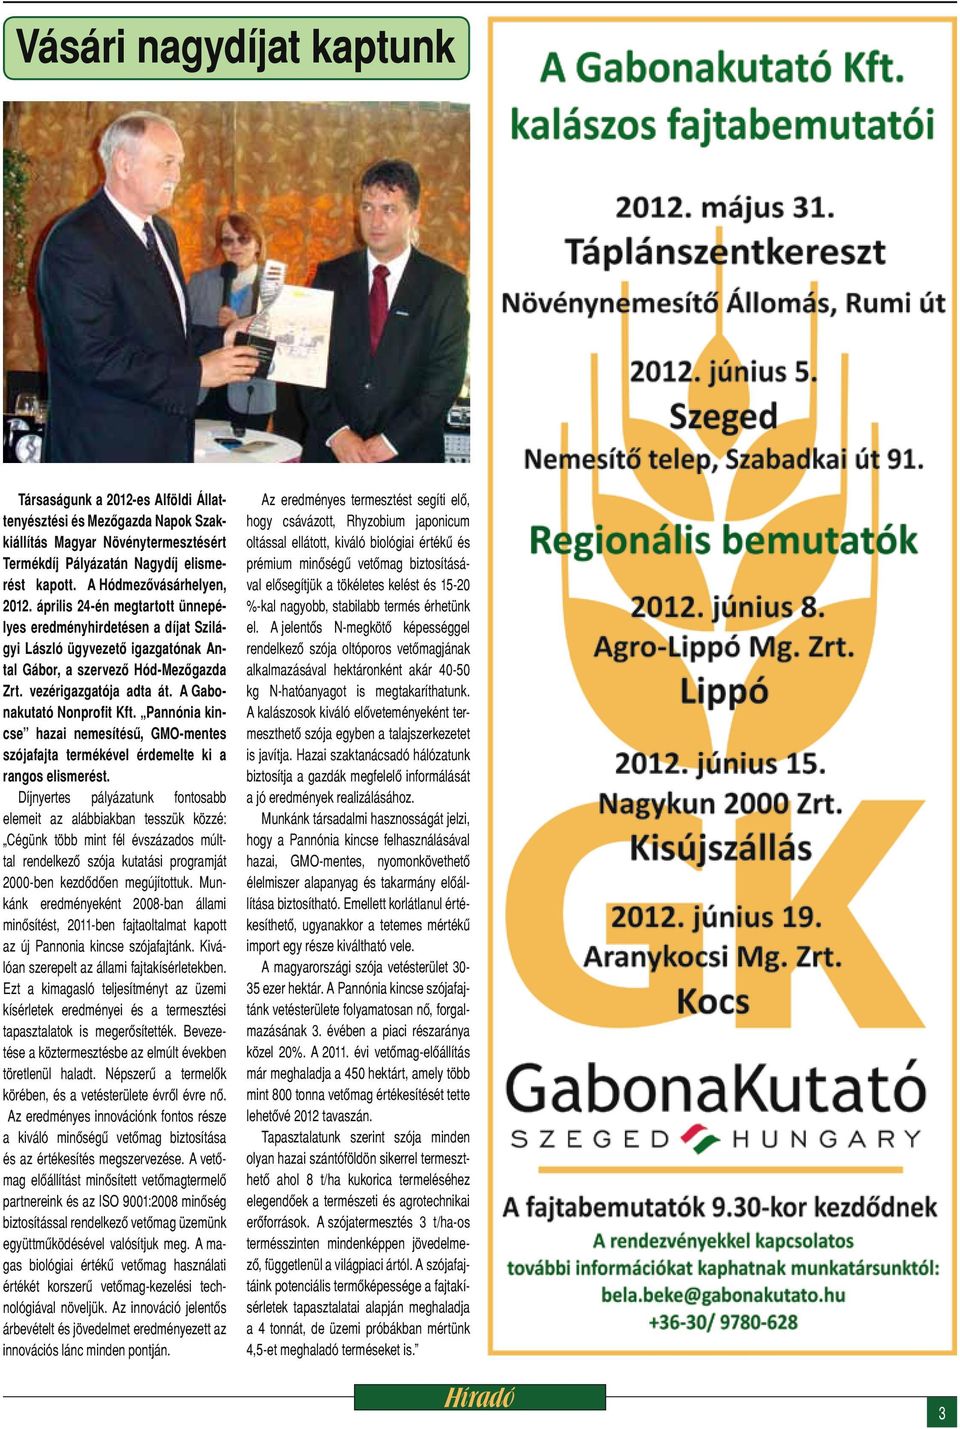 A Gabonakutató Nonprofit Kft. Pannónia kincse hazai nemesítésű, GMO-mentes szójafajta termékével érdemelte ki a rangos elismerést.